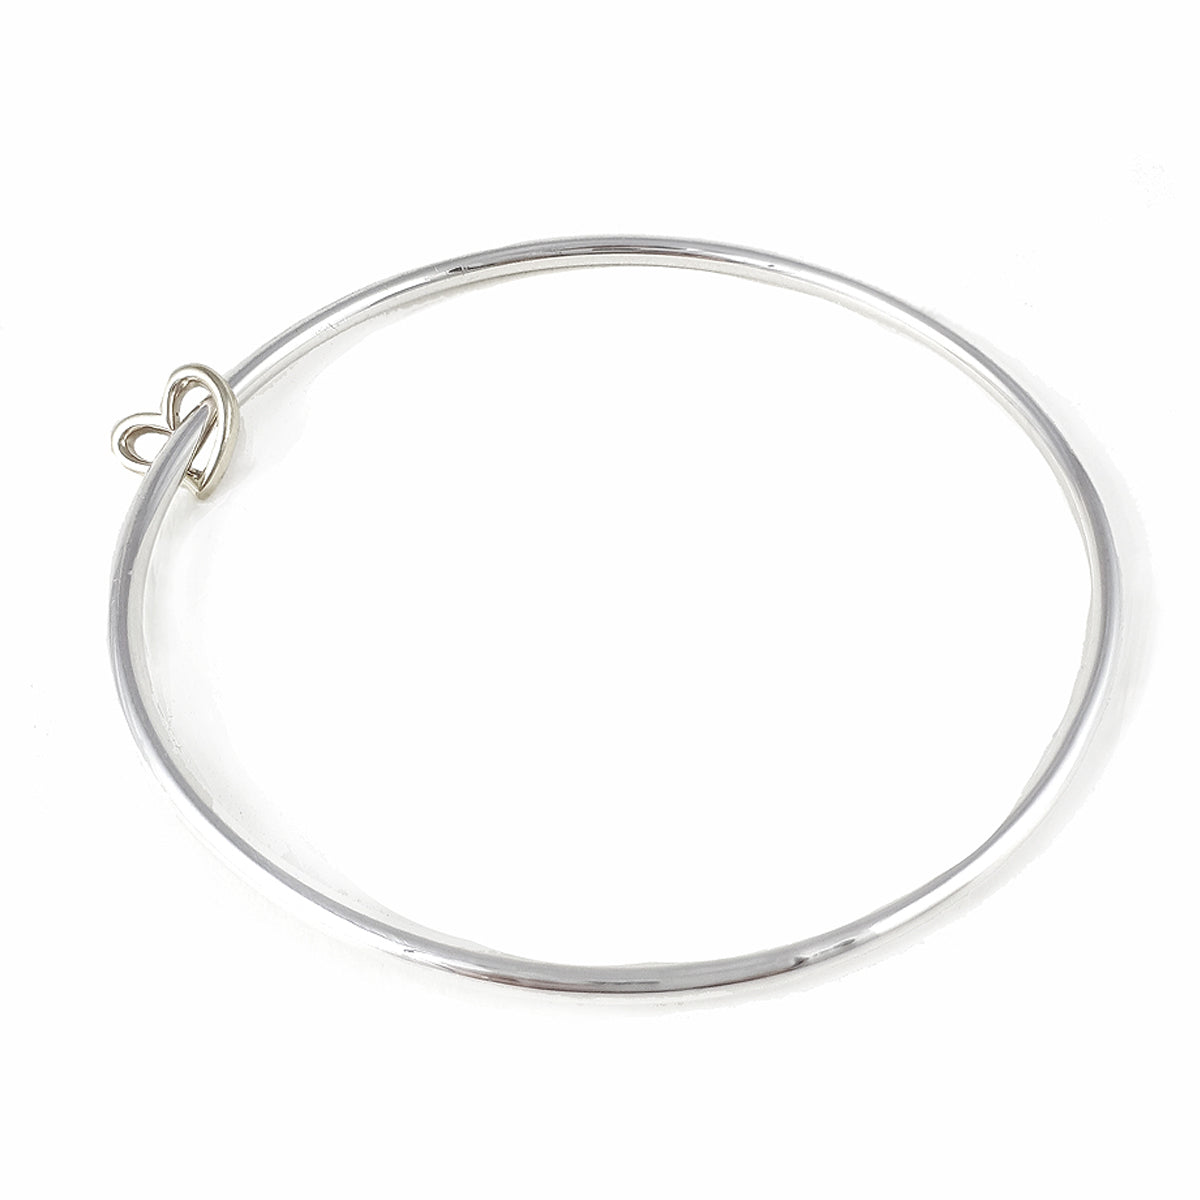 Solid silver open heart charm bangle designer bracelet Scarlett Jewellery